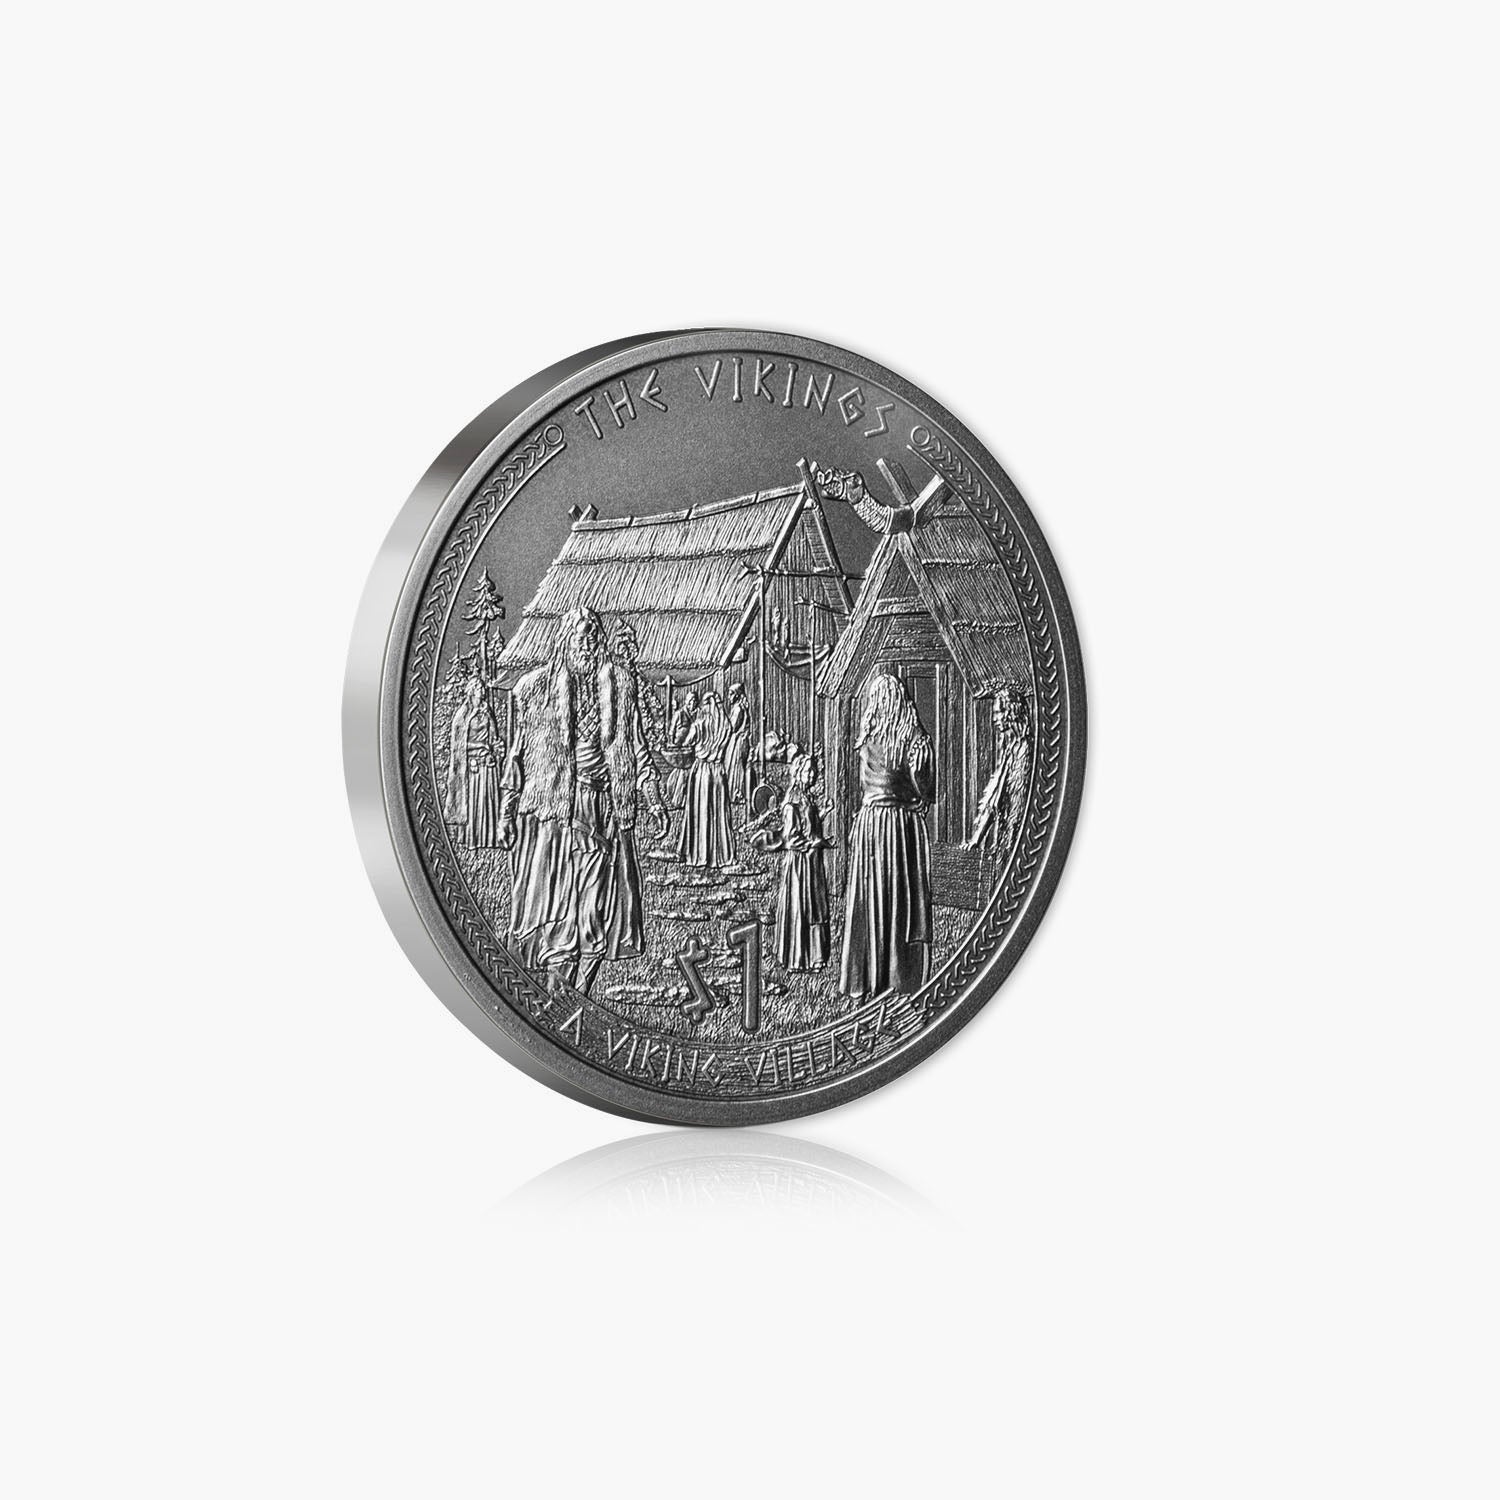 バイキング村の 1 ドル コイン